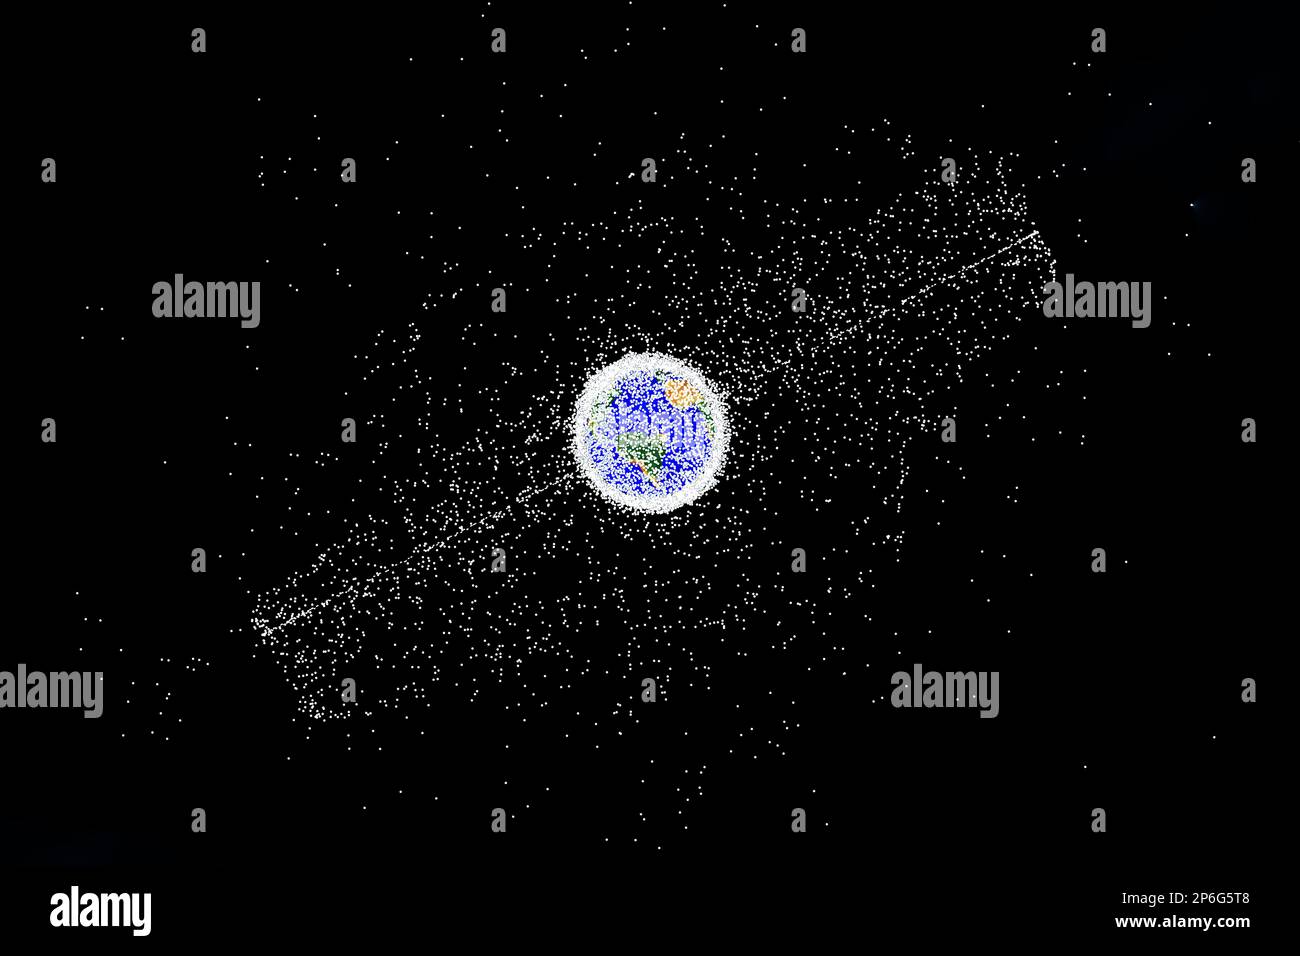 Débris spatiaux autour de la planète Terre. Éléments de cette image fournissant NASA. Photo de haute qualité Banque D'Images